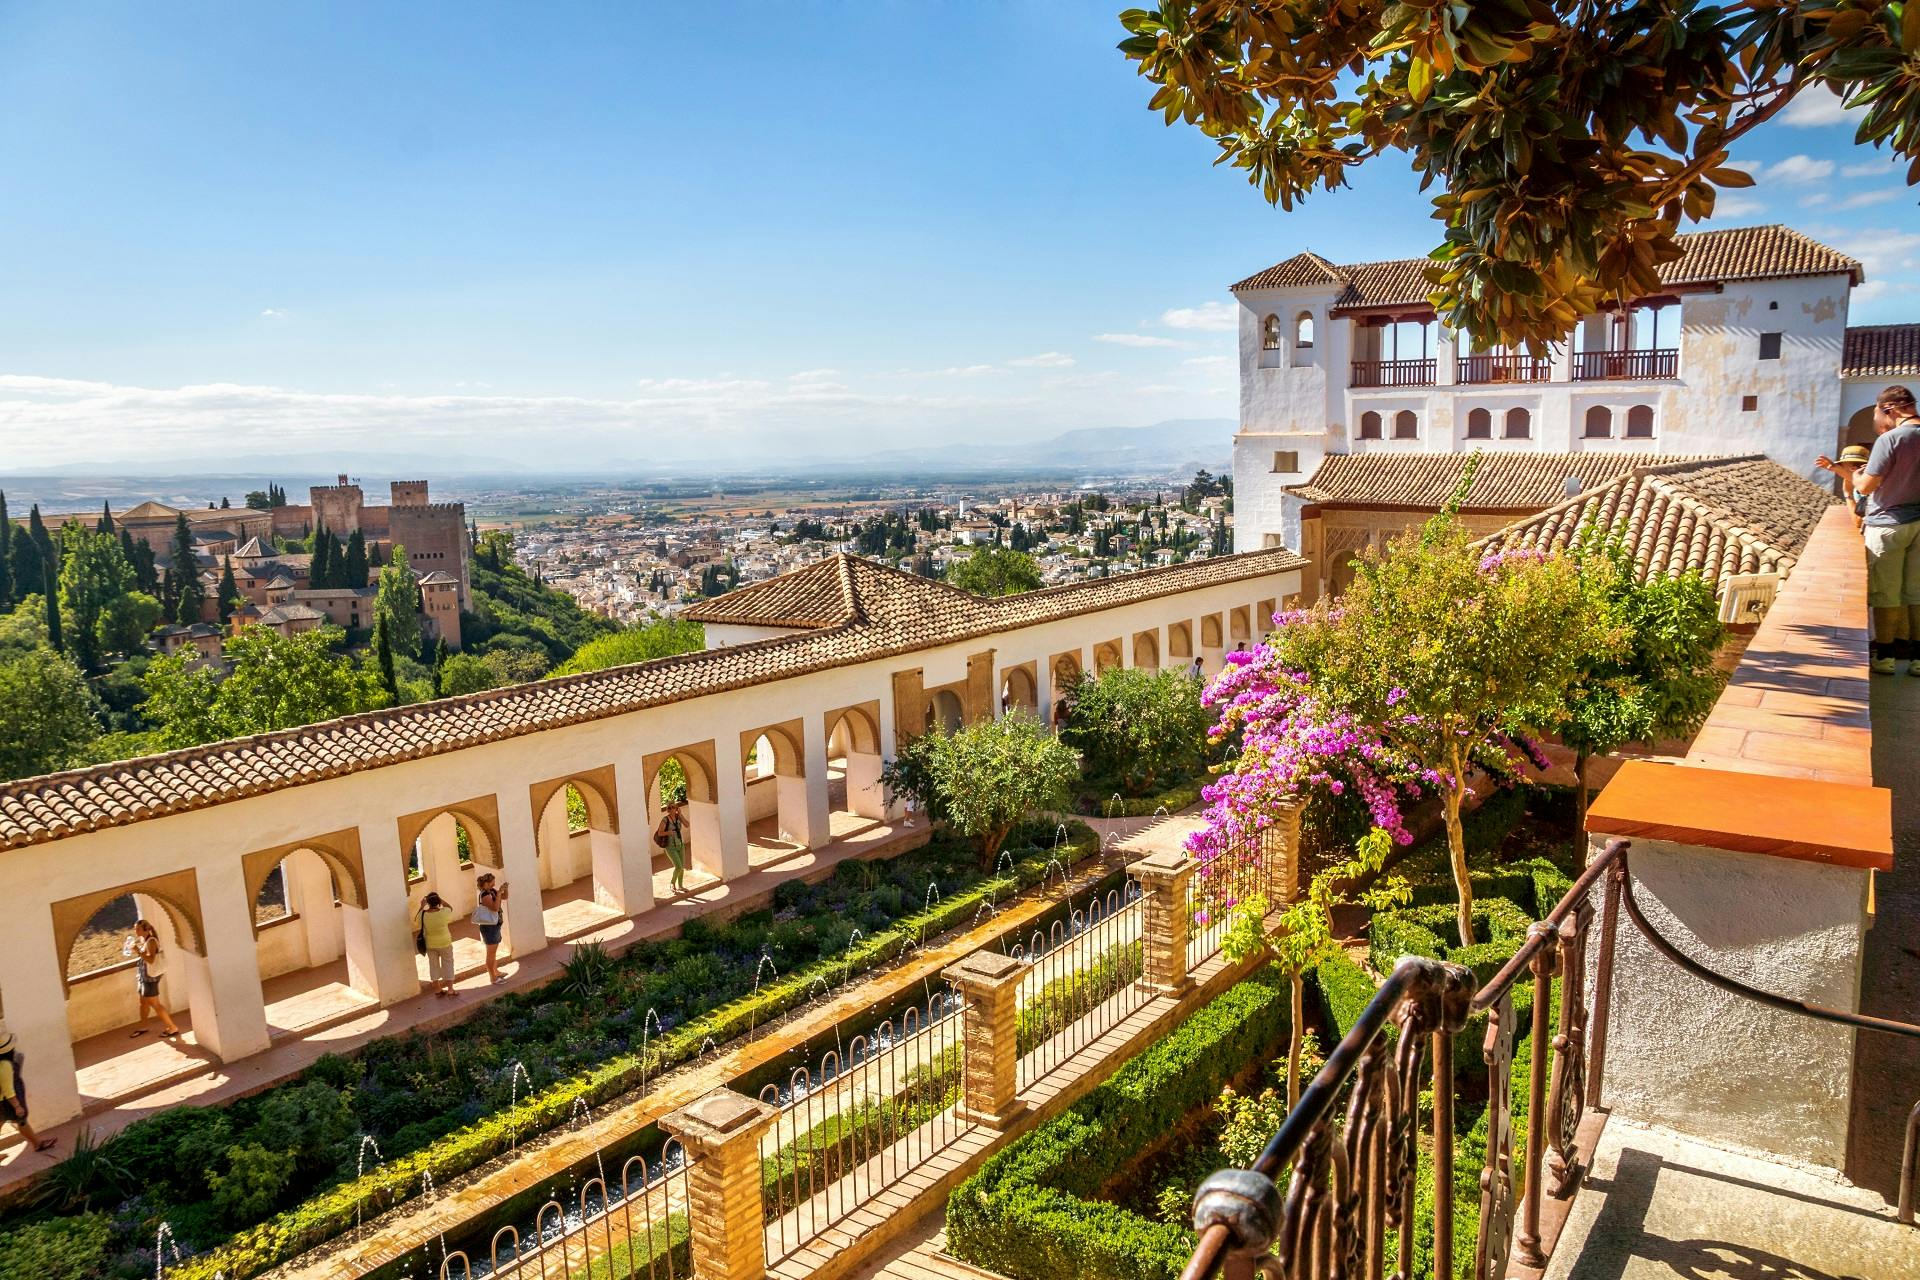 Visita guiada sin colas a la Alhambra y al Generalife